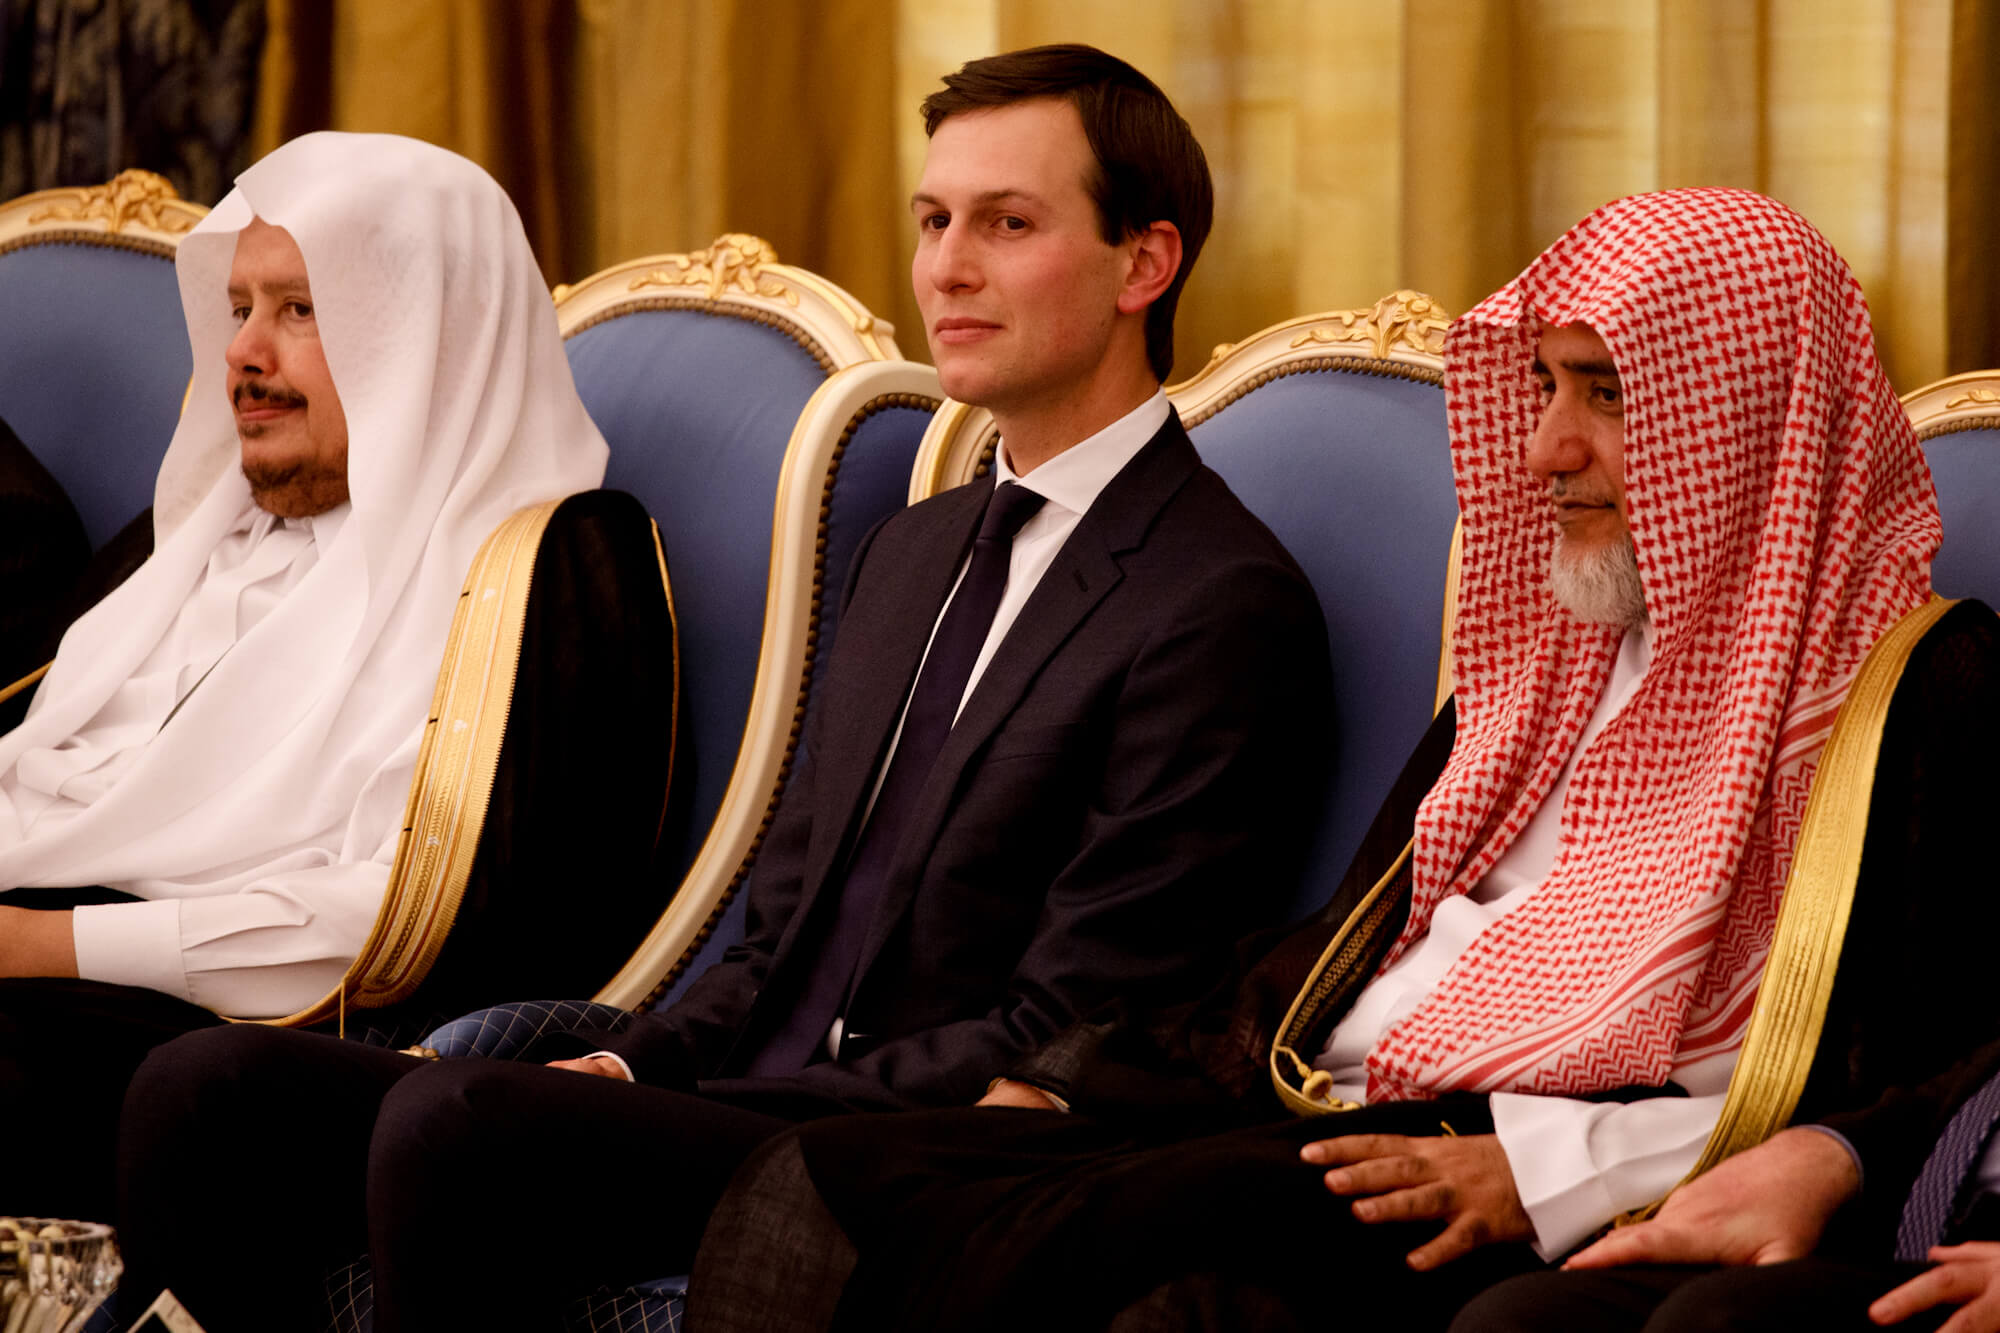 Jared Kushner asiste a una ceremonia en el Palacio Real de la Corte, el 20 de mayo de 2017, en Riyadh, Arabia Saudita. Evan Vucci | AP